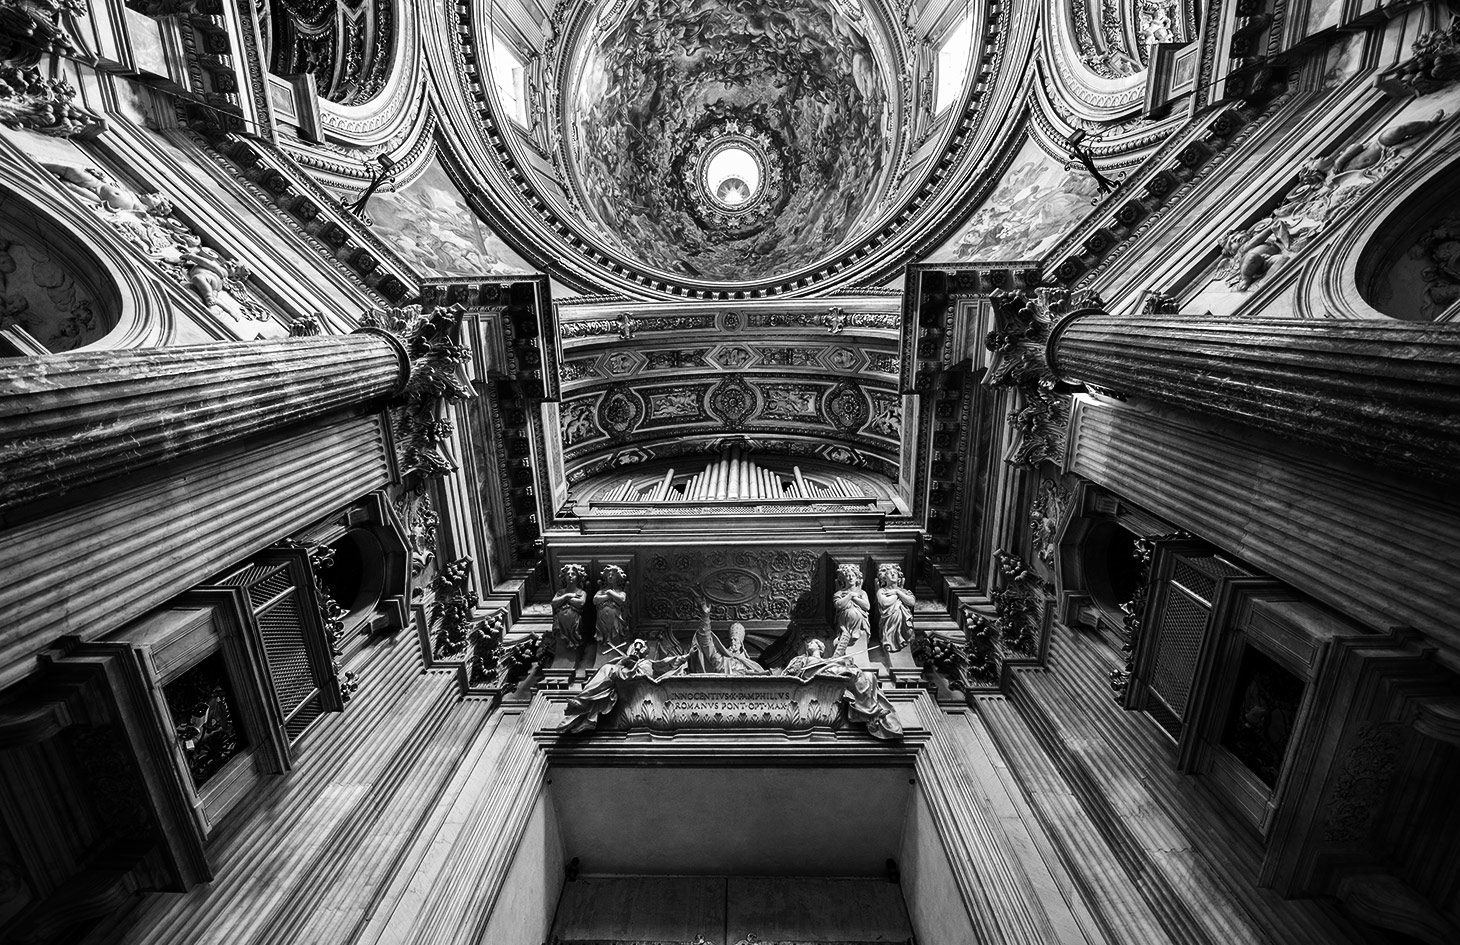 Categorie: Architecture & Interior - Photographer: IVAN MELZI - Location: Via di Santa Maria dell'Anima, 30a, Roma, RM, Italia